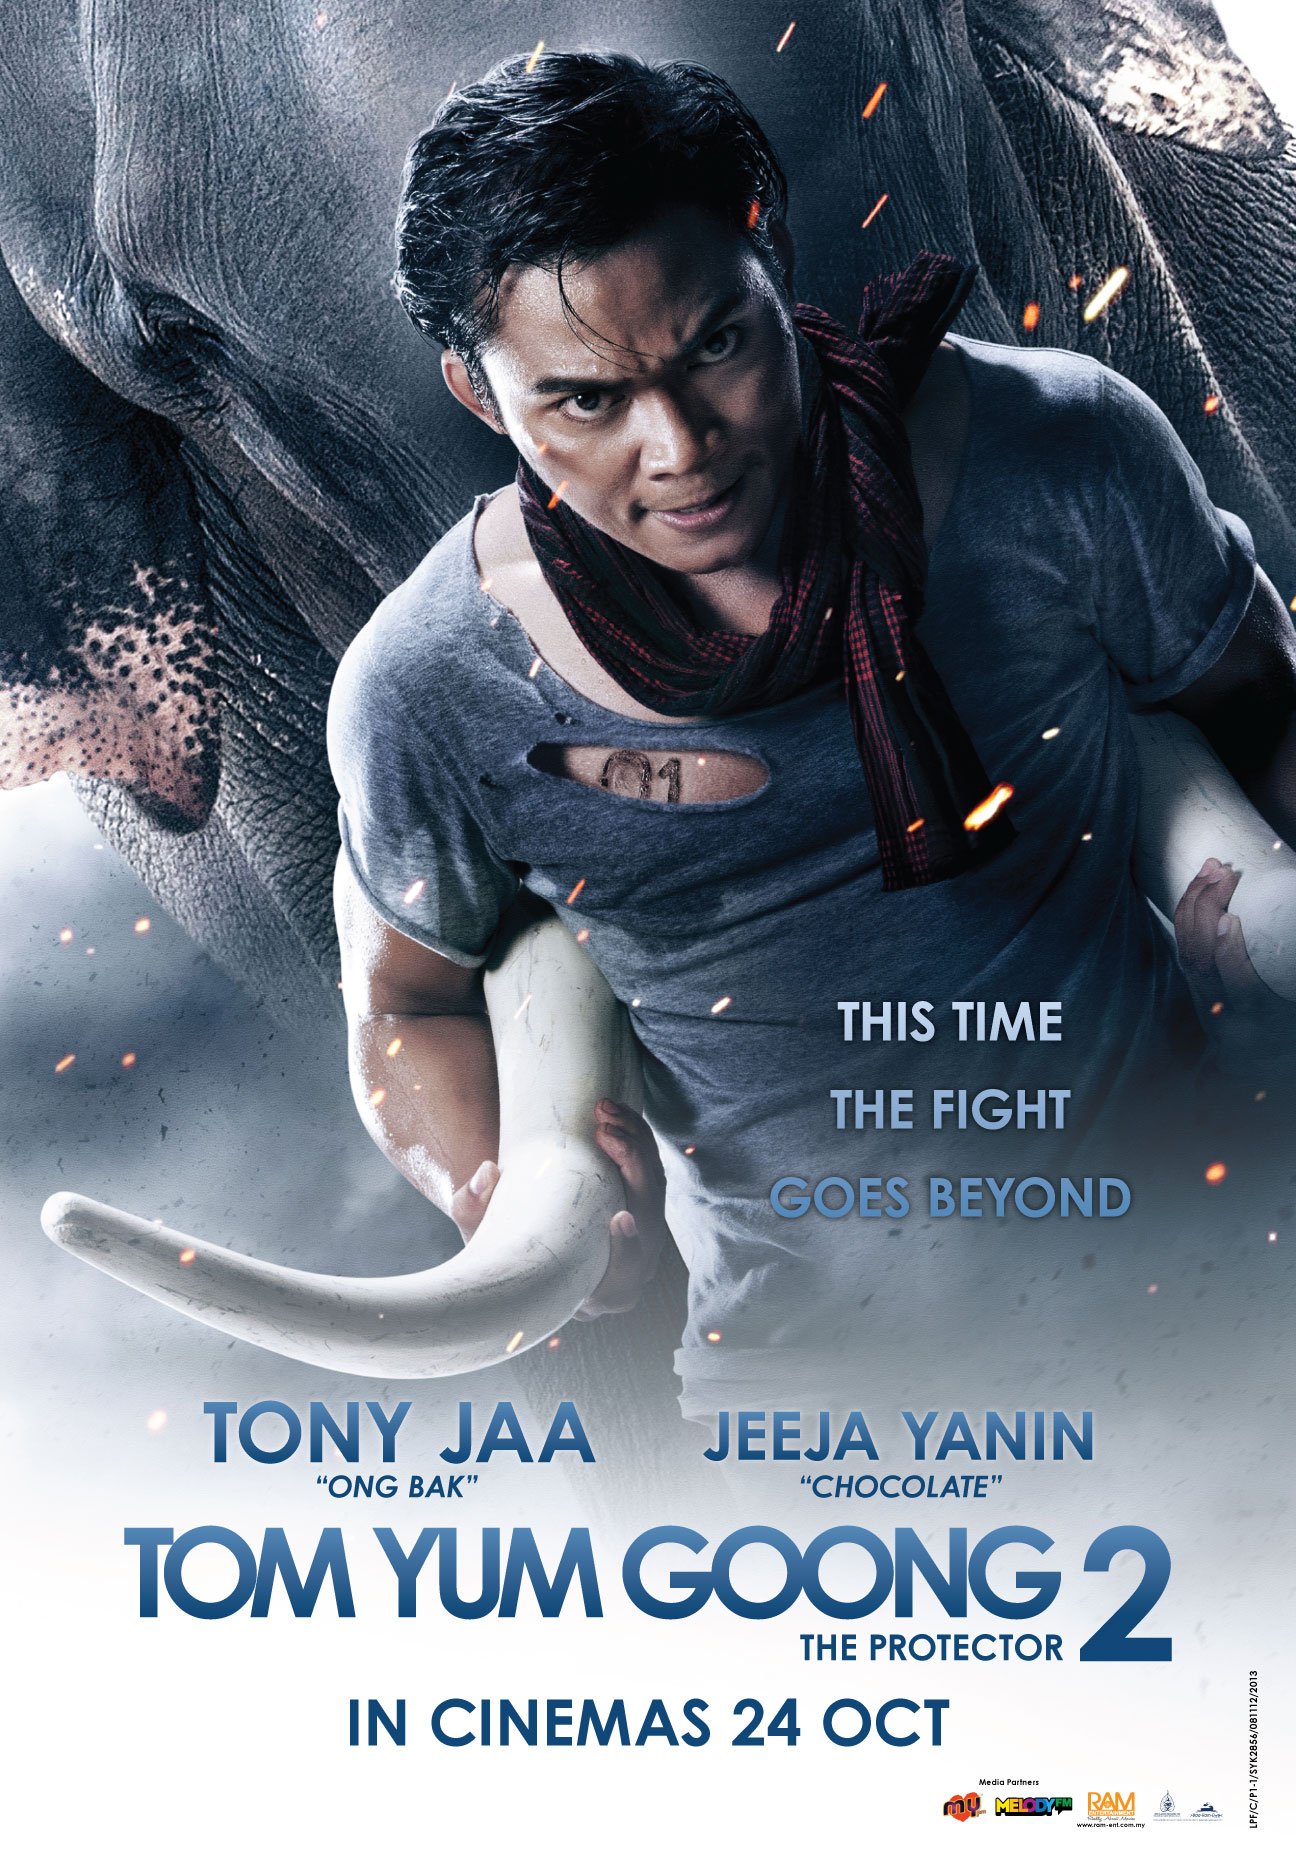 L'affiche originale du film The Protector 2 en Thaïlandais